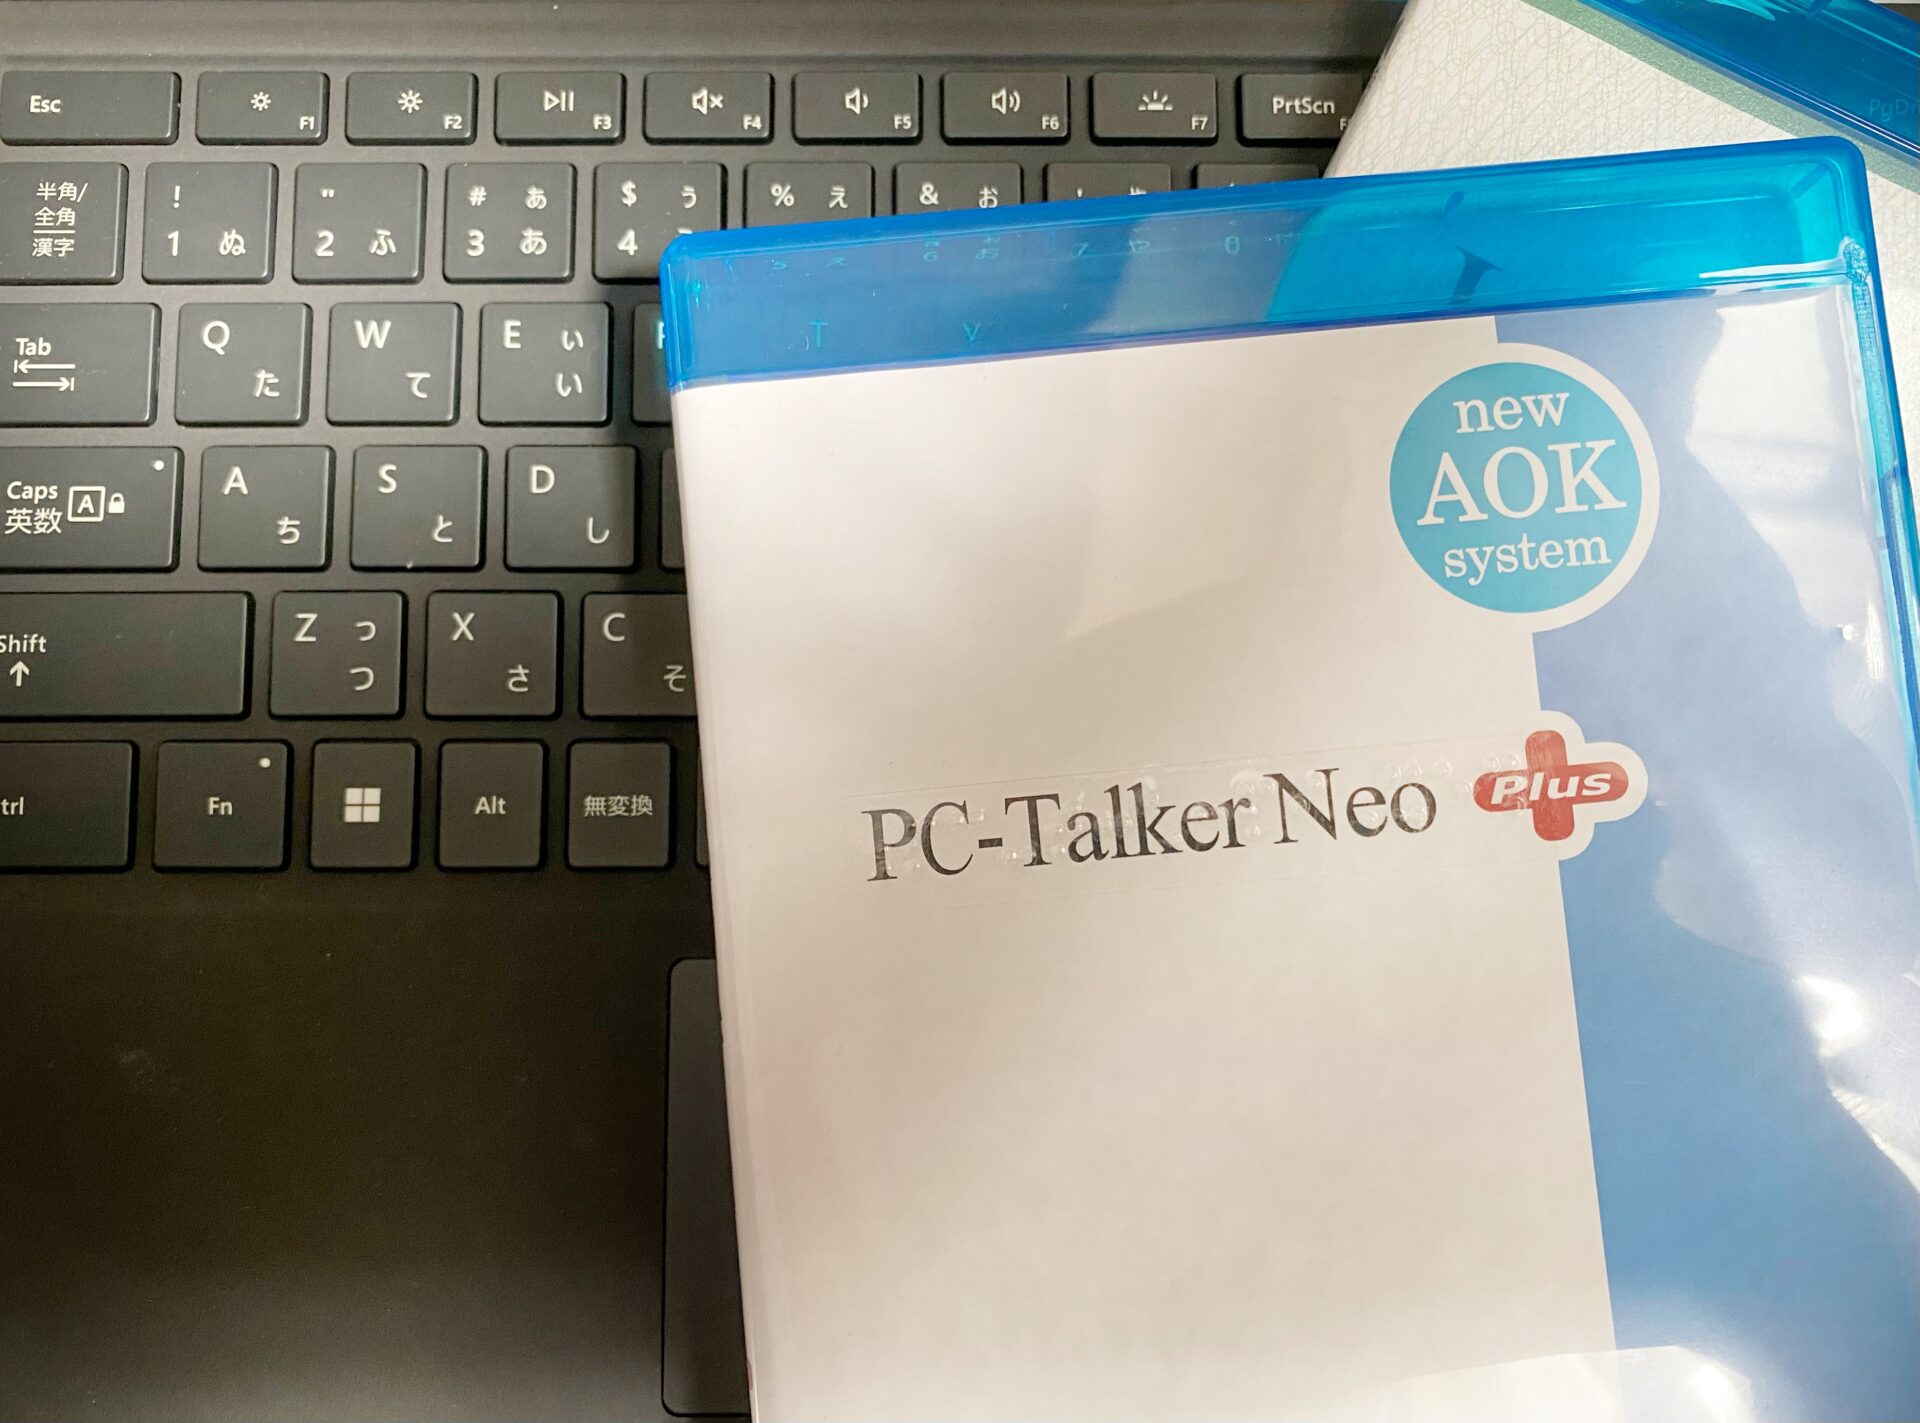 キーボードとPC Talkerのスタートアップディスクのパッケージの写真なお、本記事で紹介するキーボードはサーフェスのキーボードを使用しています